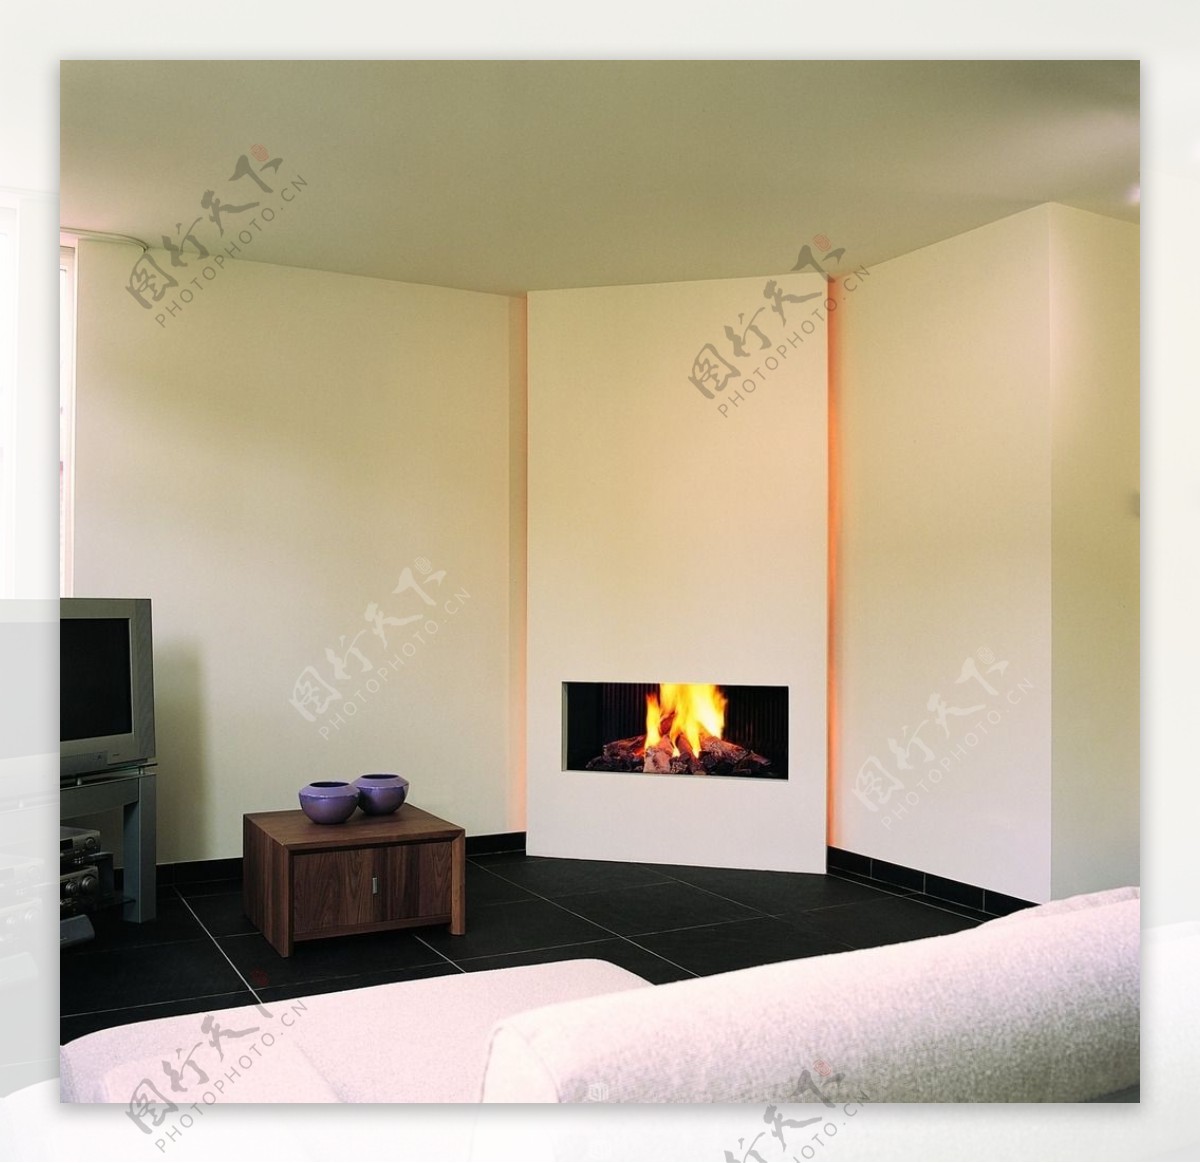 客厅伏羲壁炉3D火炉图片